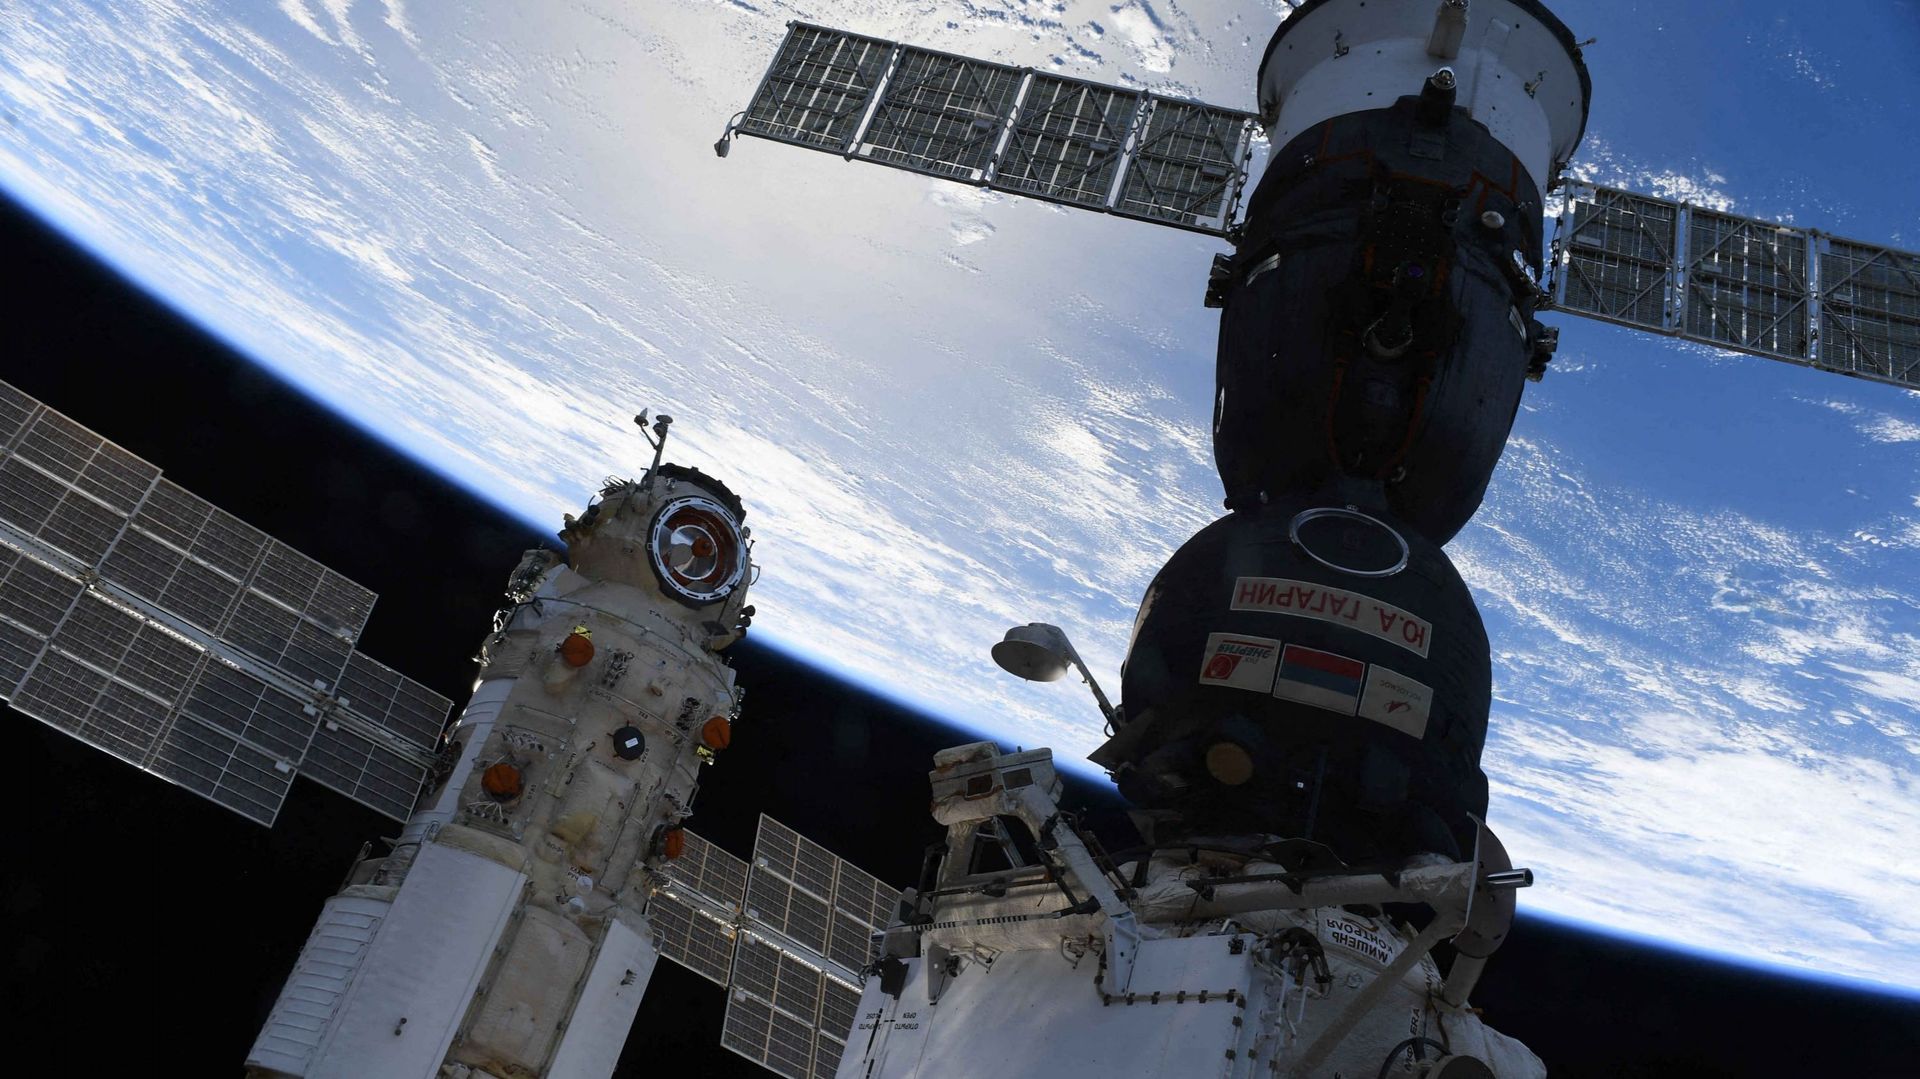 Le module laboratoire polyvalent russe "Nauka" (Science) amarré à côté du vaisseau spatial Soyouz MS-18 sur la Station spatiale internationale (ISS) le 30 juillet 2021